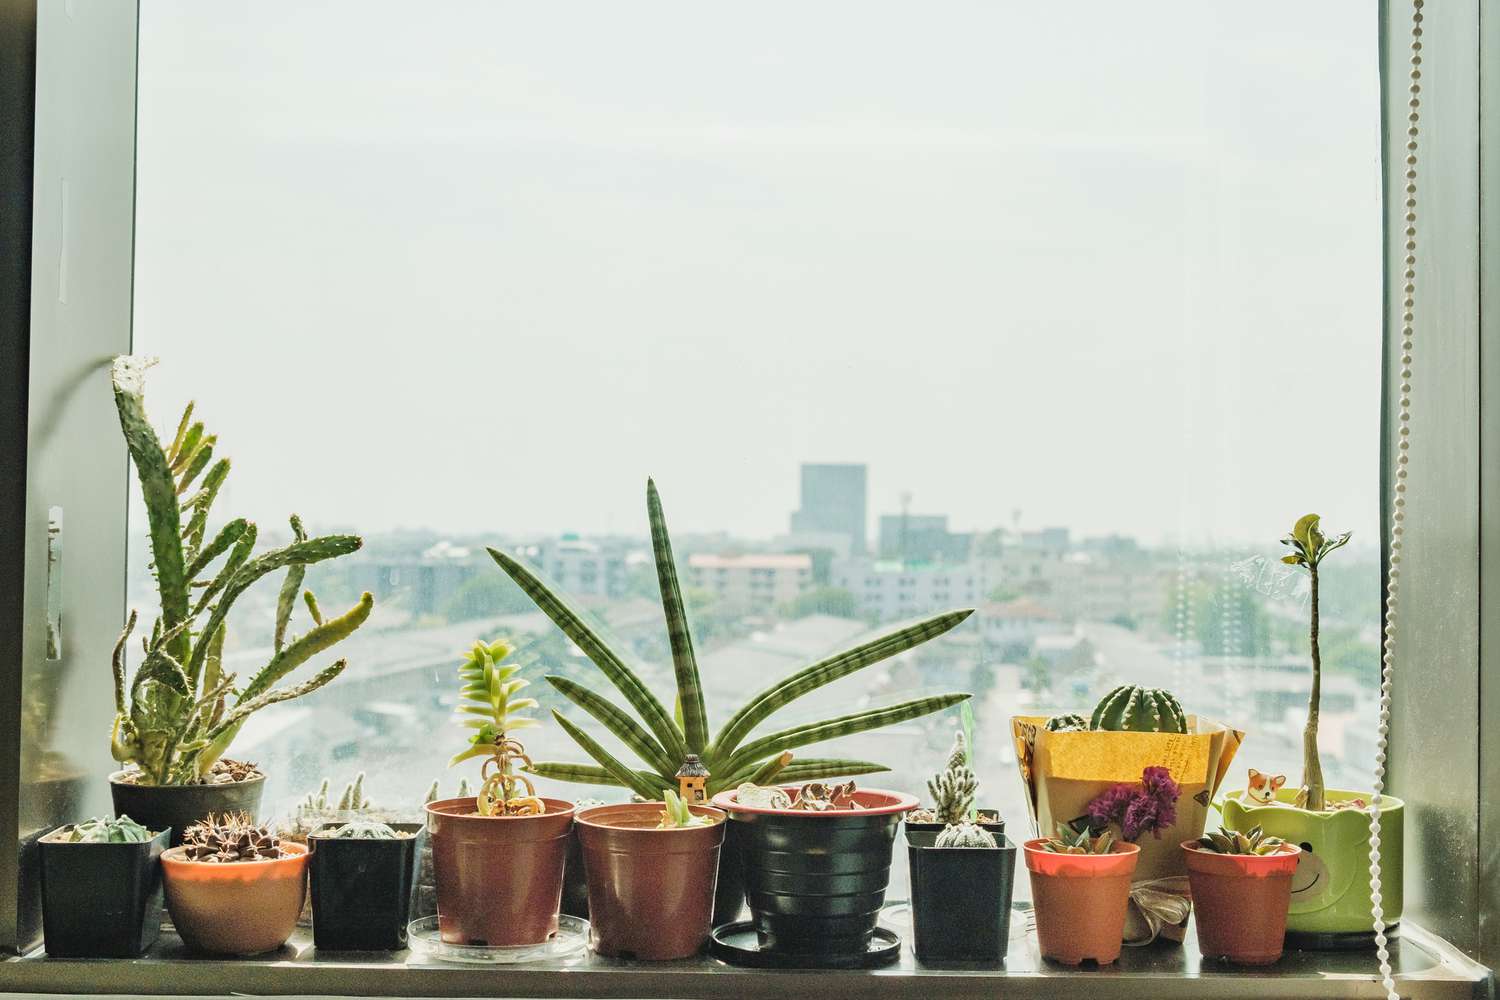 Pflanzen auf einer Fensterbank